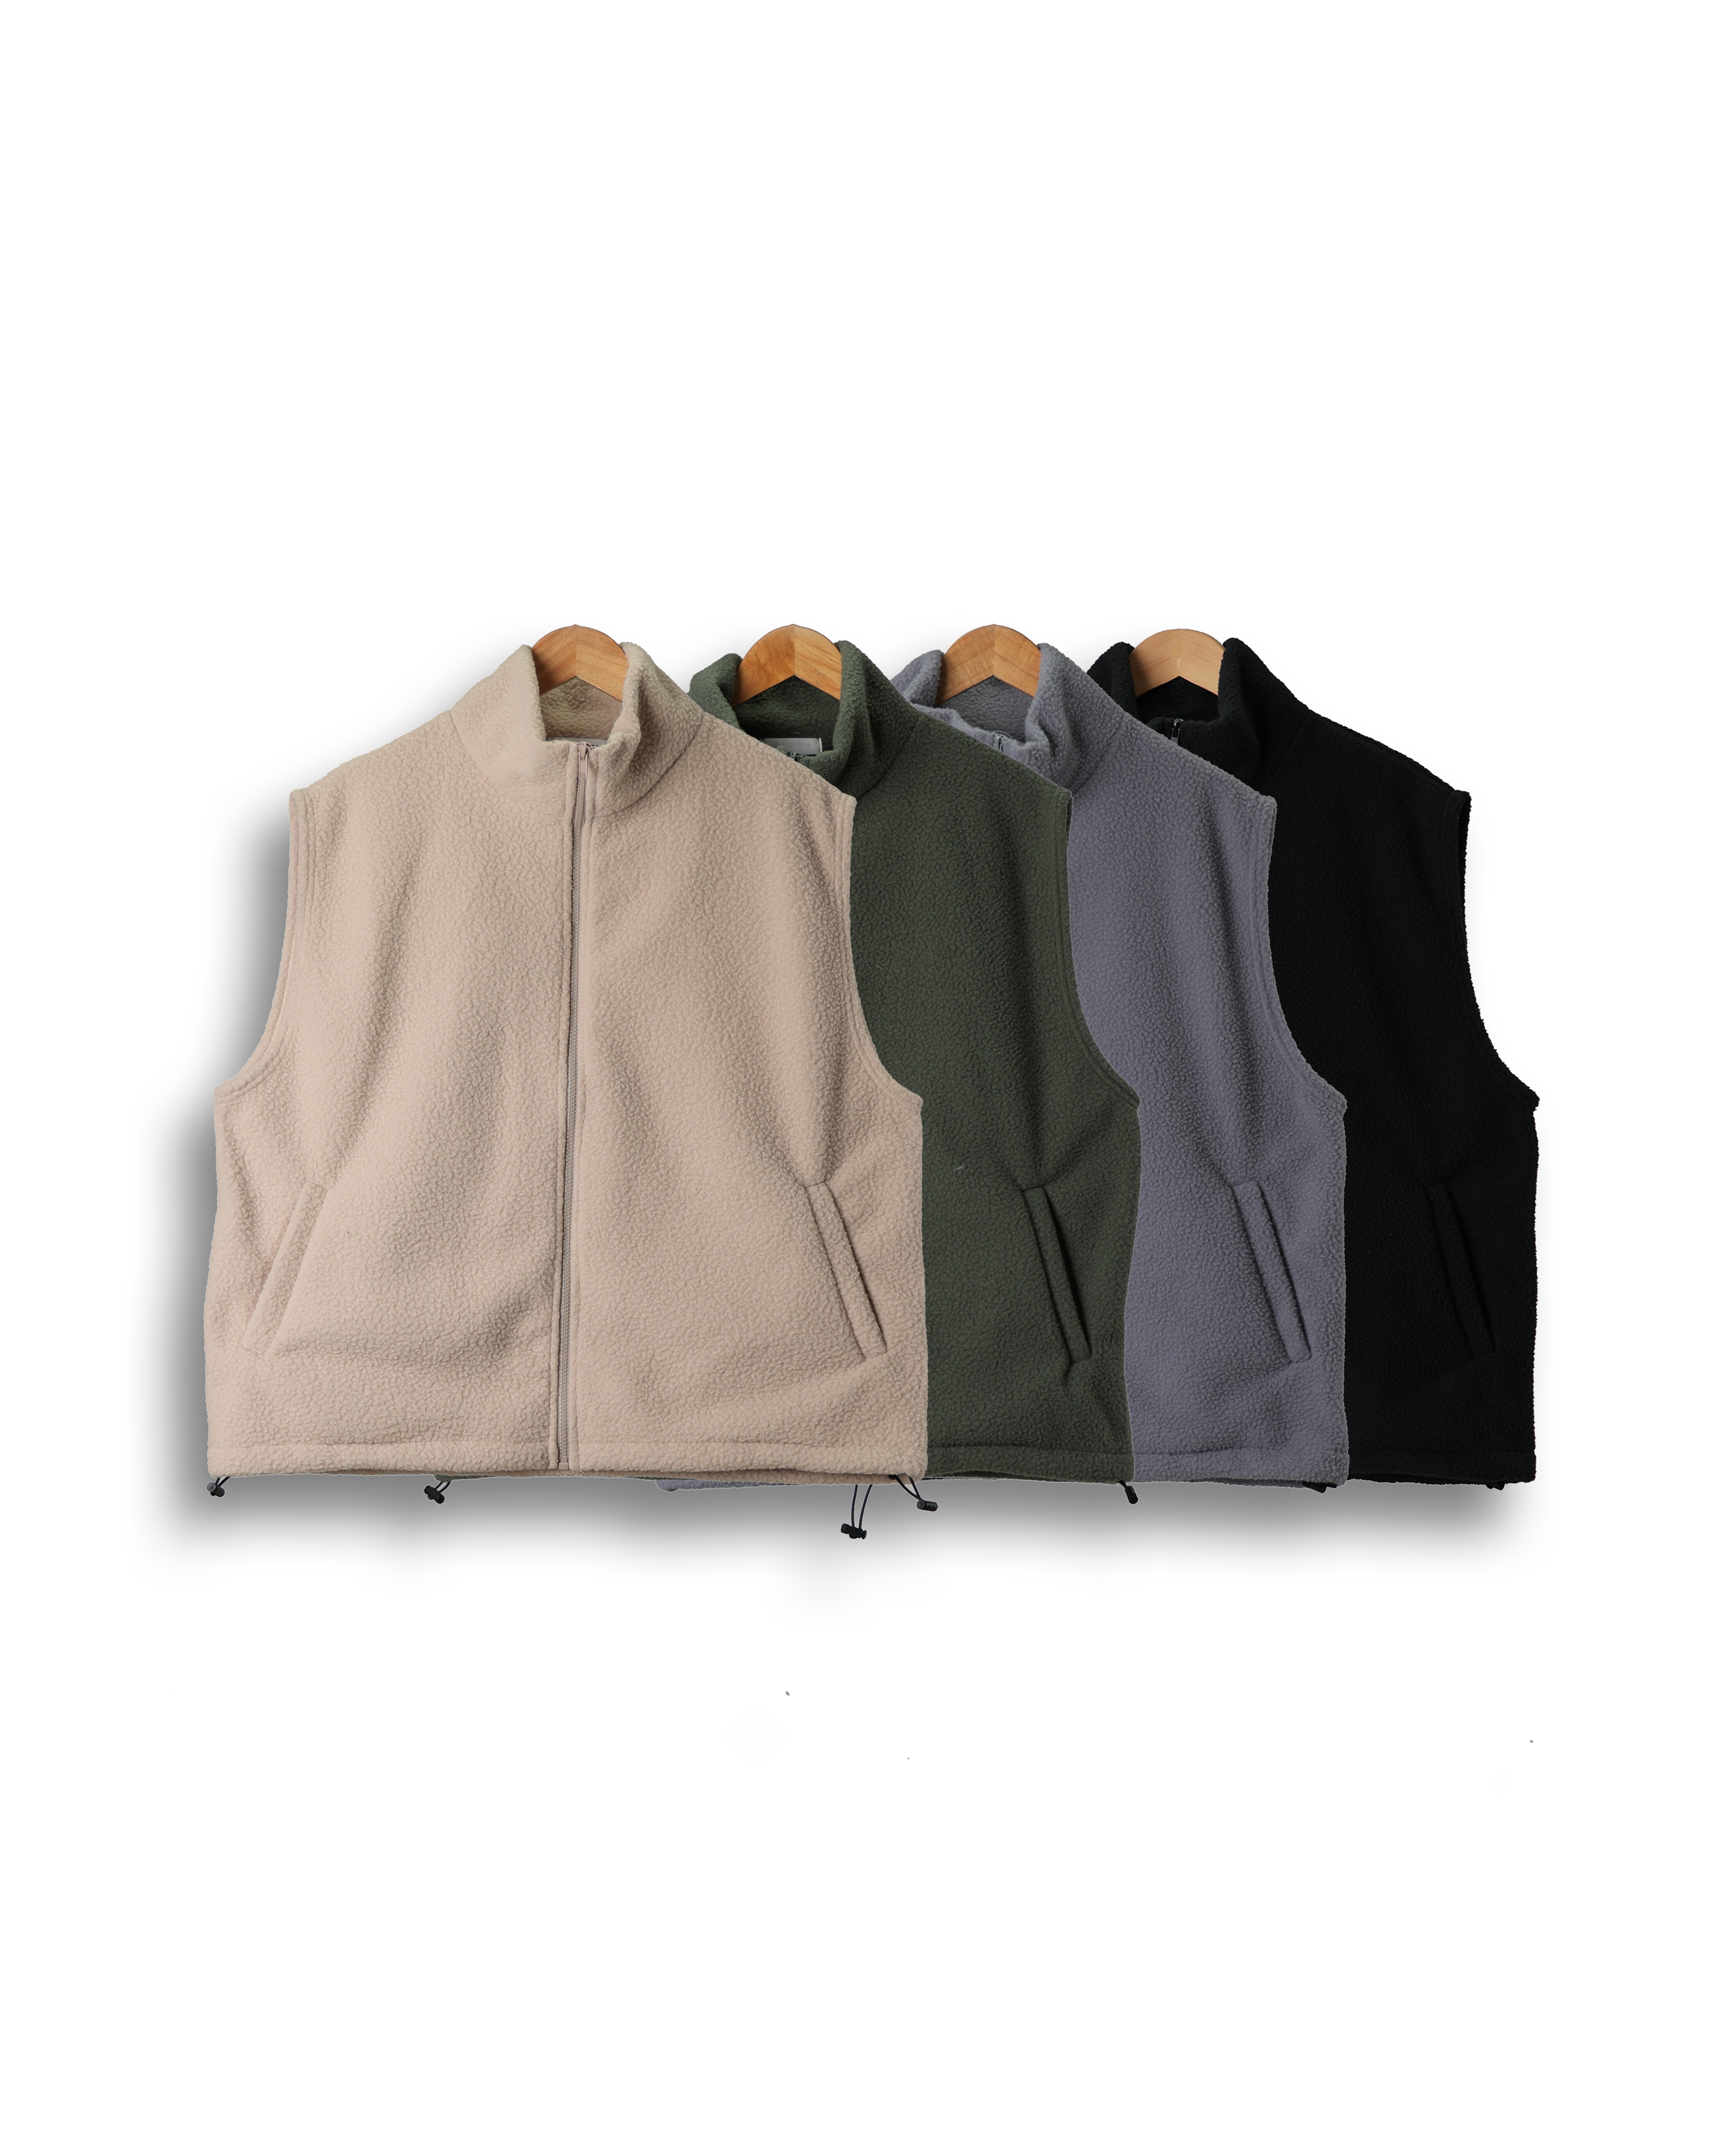 PCENT Urban Fleece Drop Vest (Black/Gray/Olive/Beige)